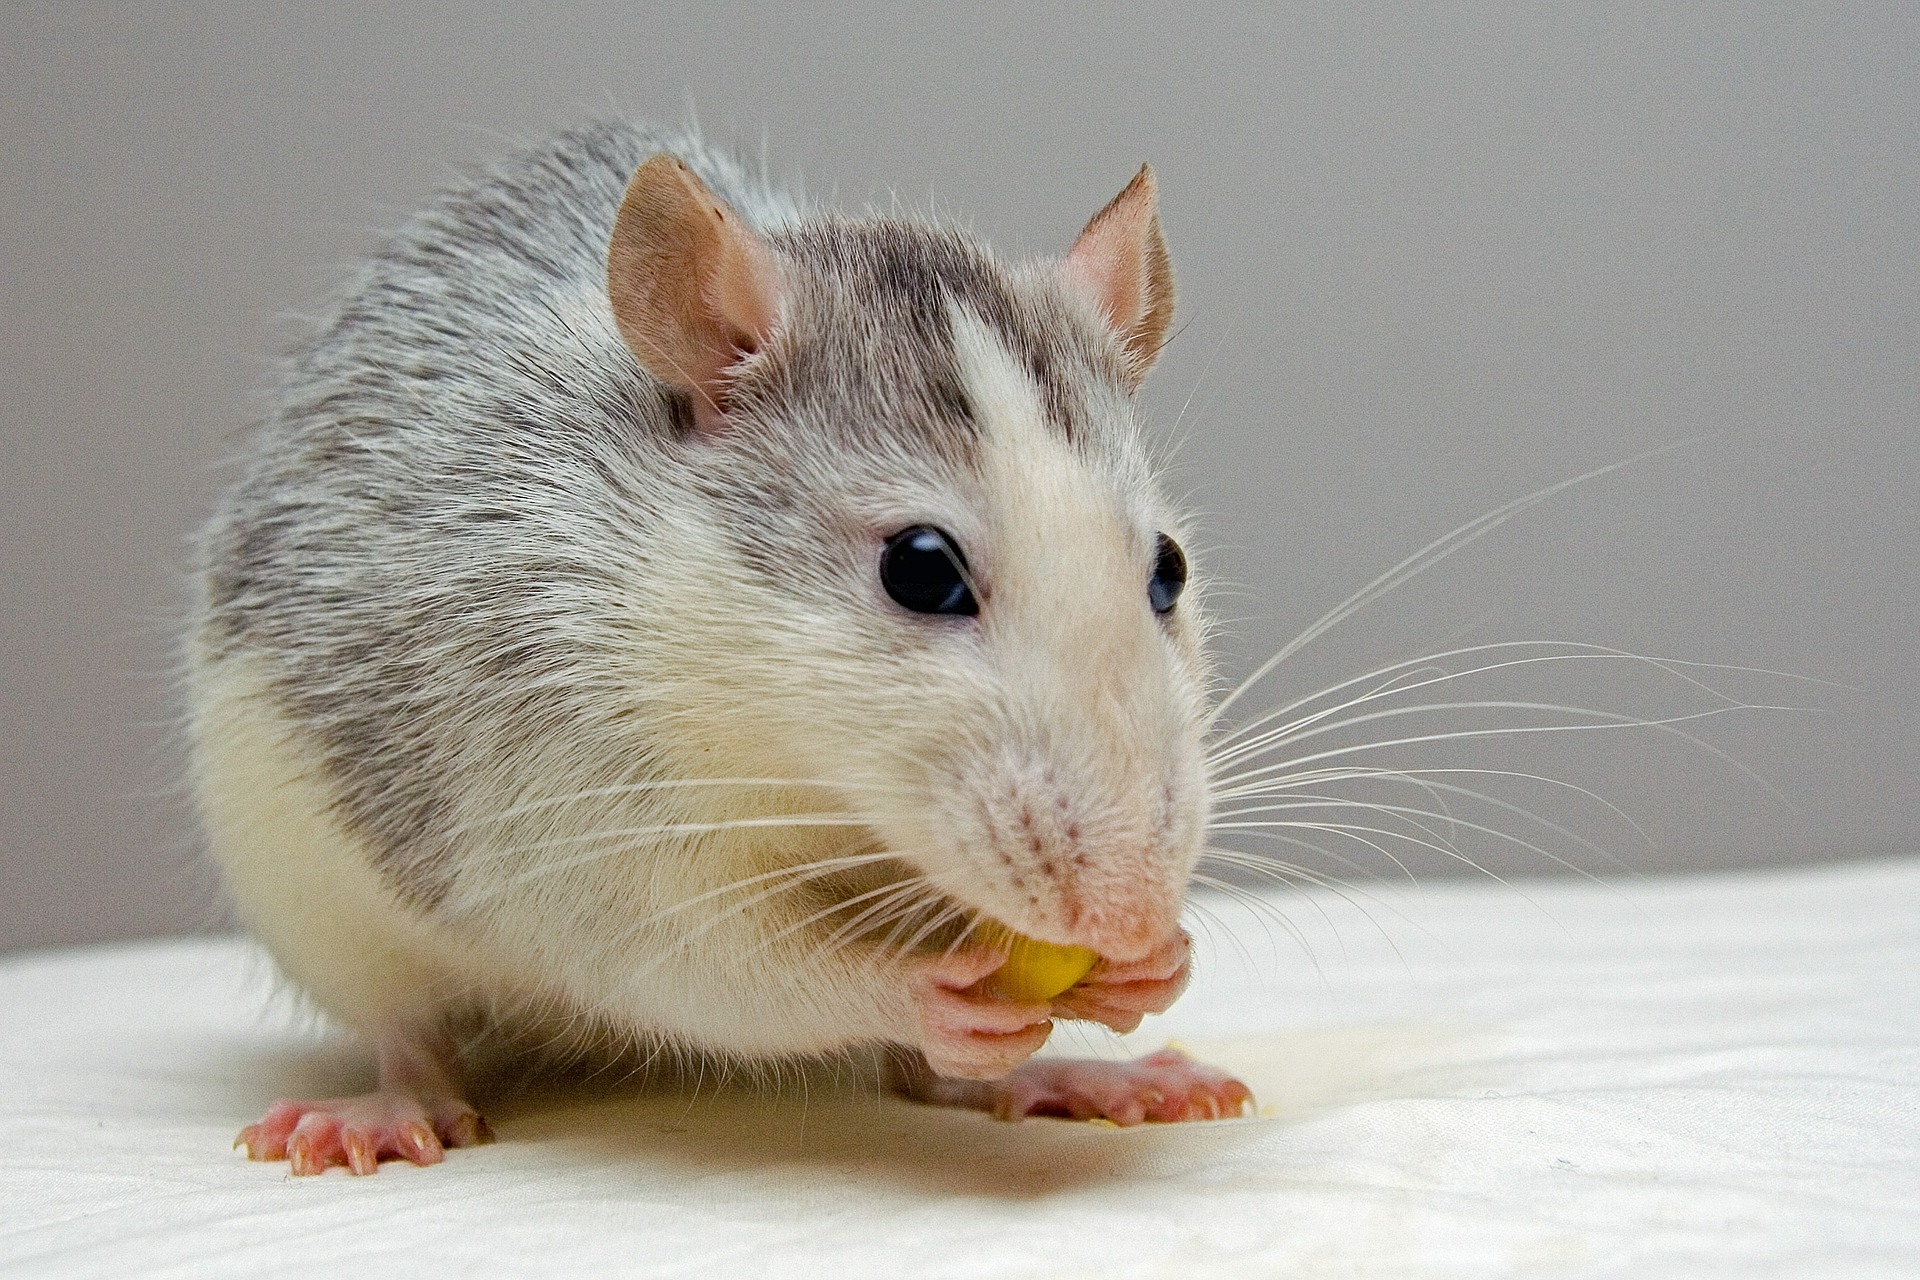 Rat nibbling food